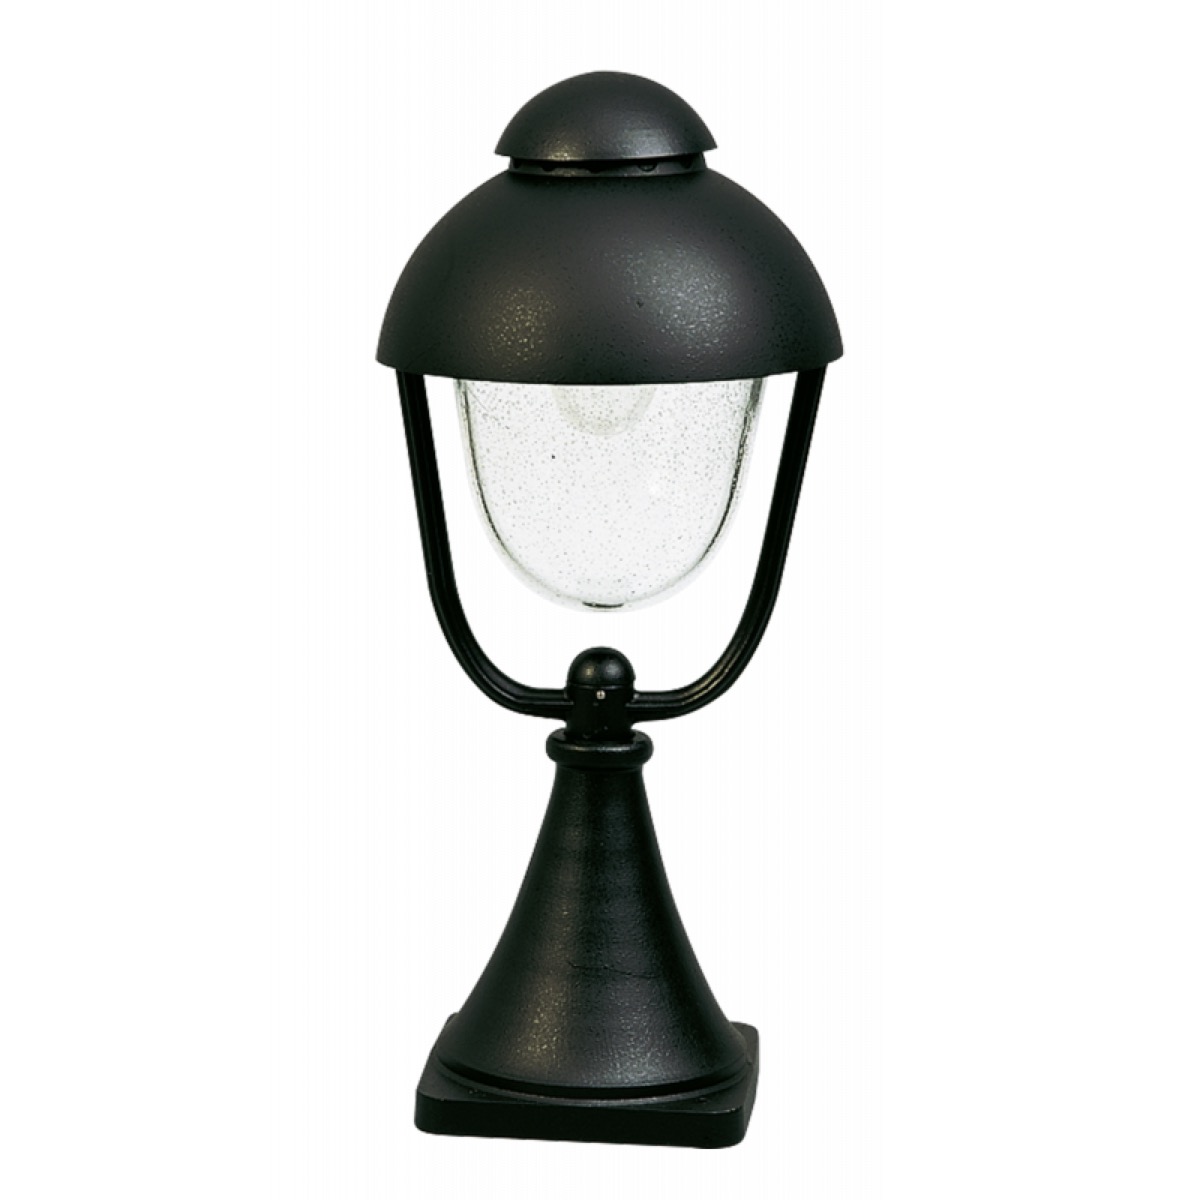 Albert LeuchtenSockelleuchte Typ Nr. 0515 - Farbe: schwarz, für 1 x Lampe, E27